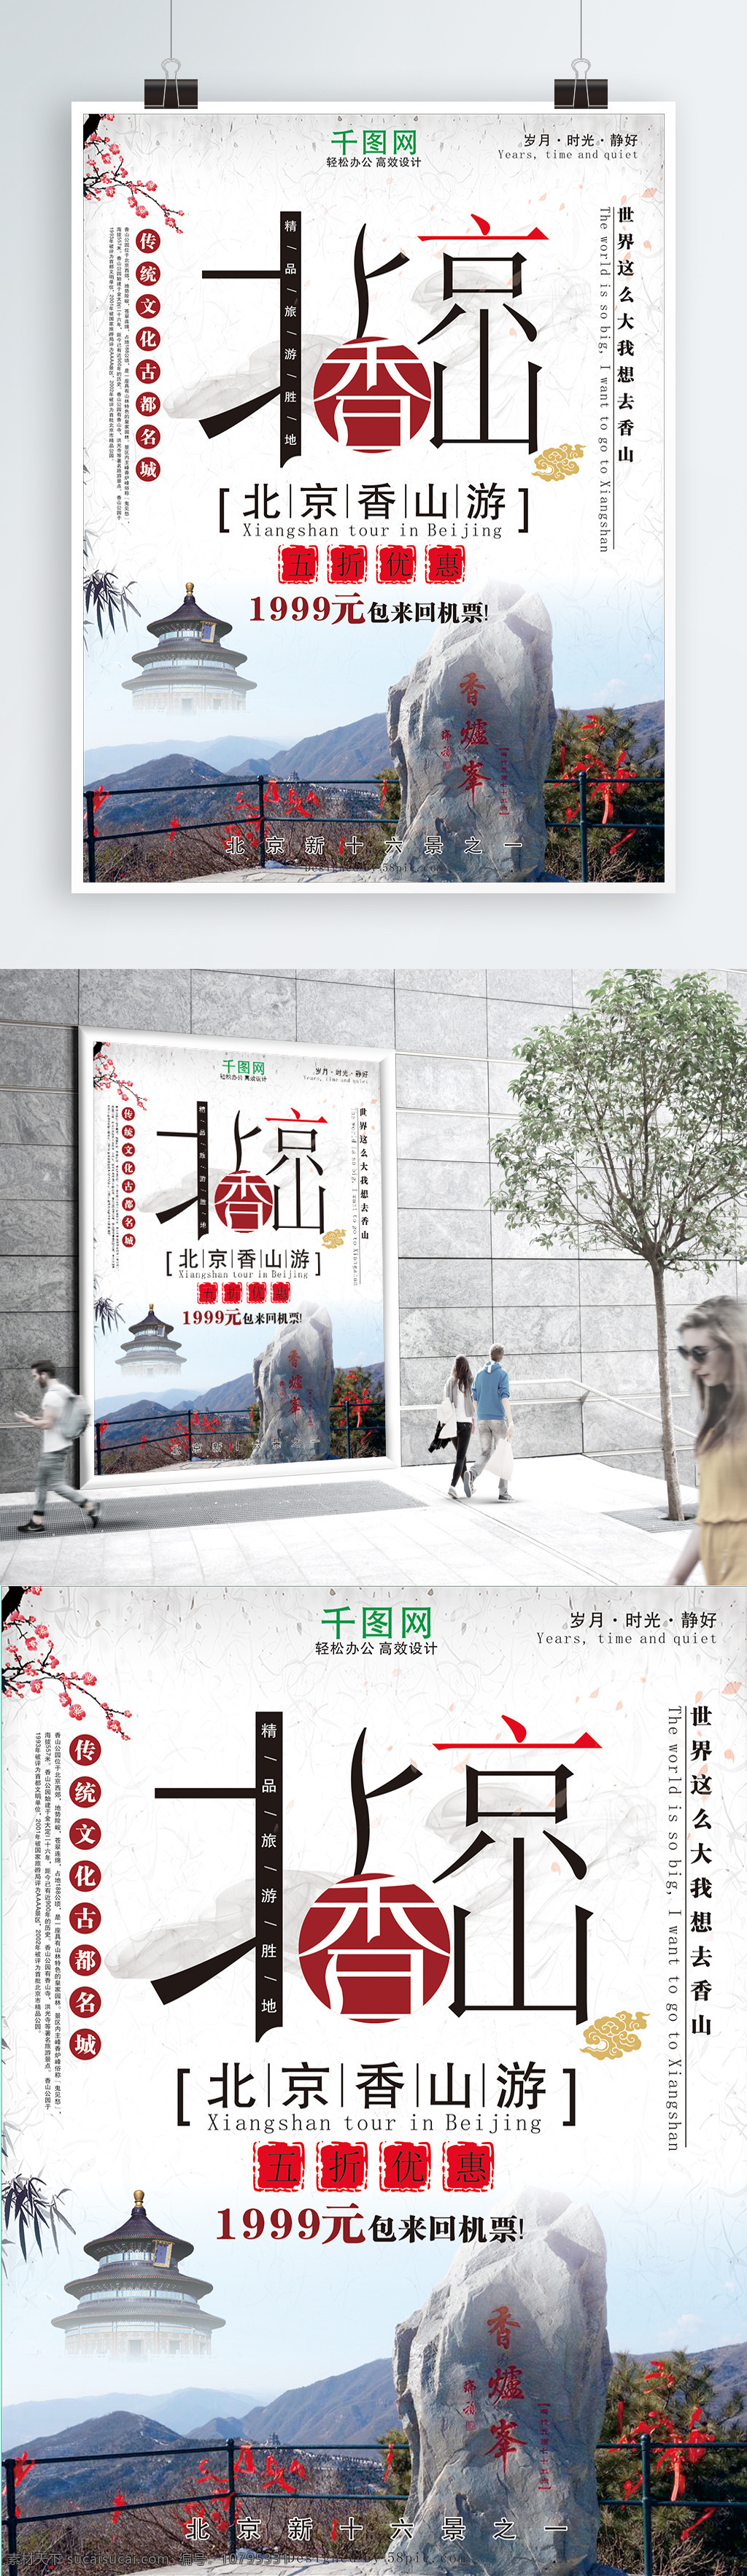 北京 香山 旅游 海报 旅游海报 旅游促销海报 促销海报 艺术 字